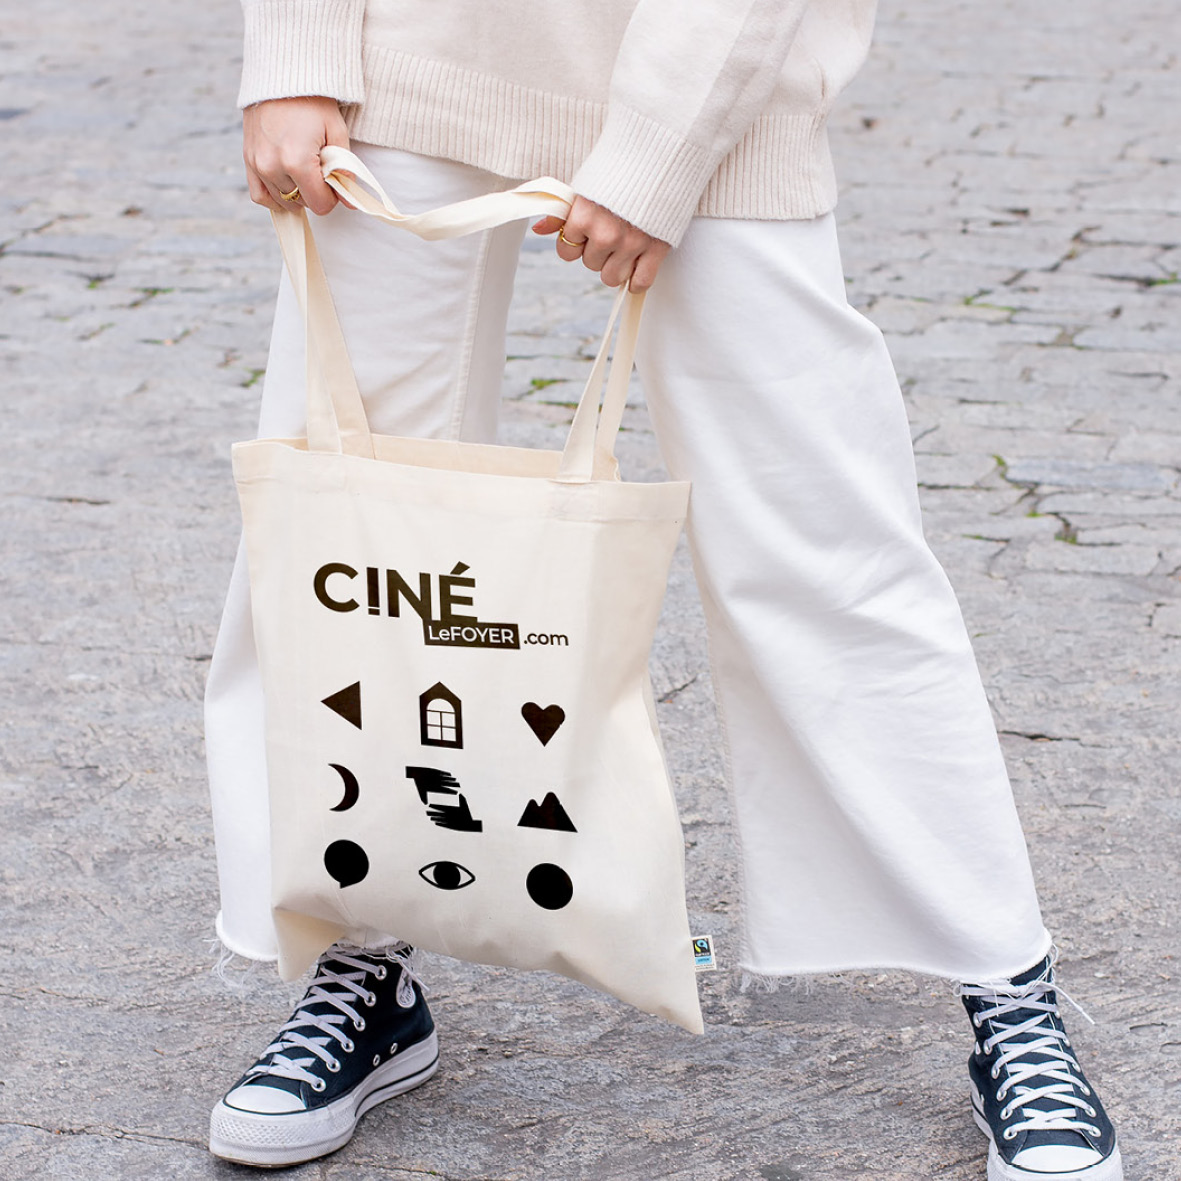 personne dans la rue tenant un tote bag avec logo et pictos du cinéma le foyer